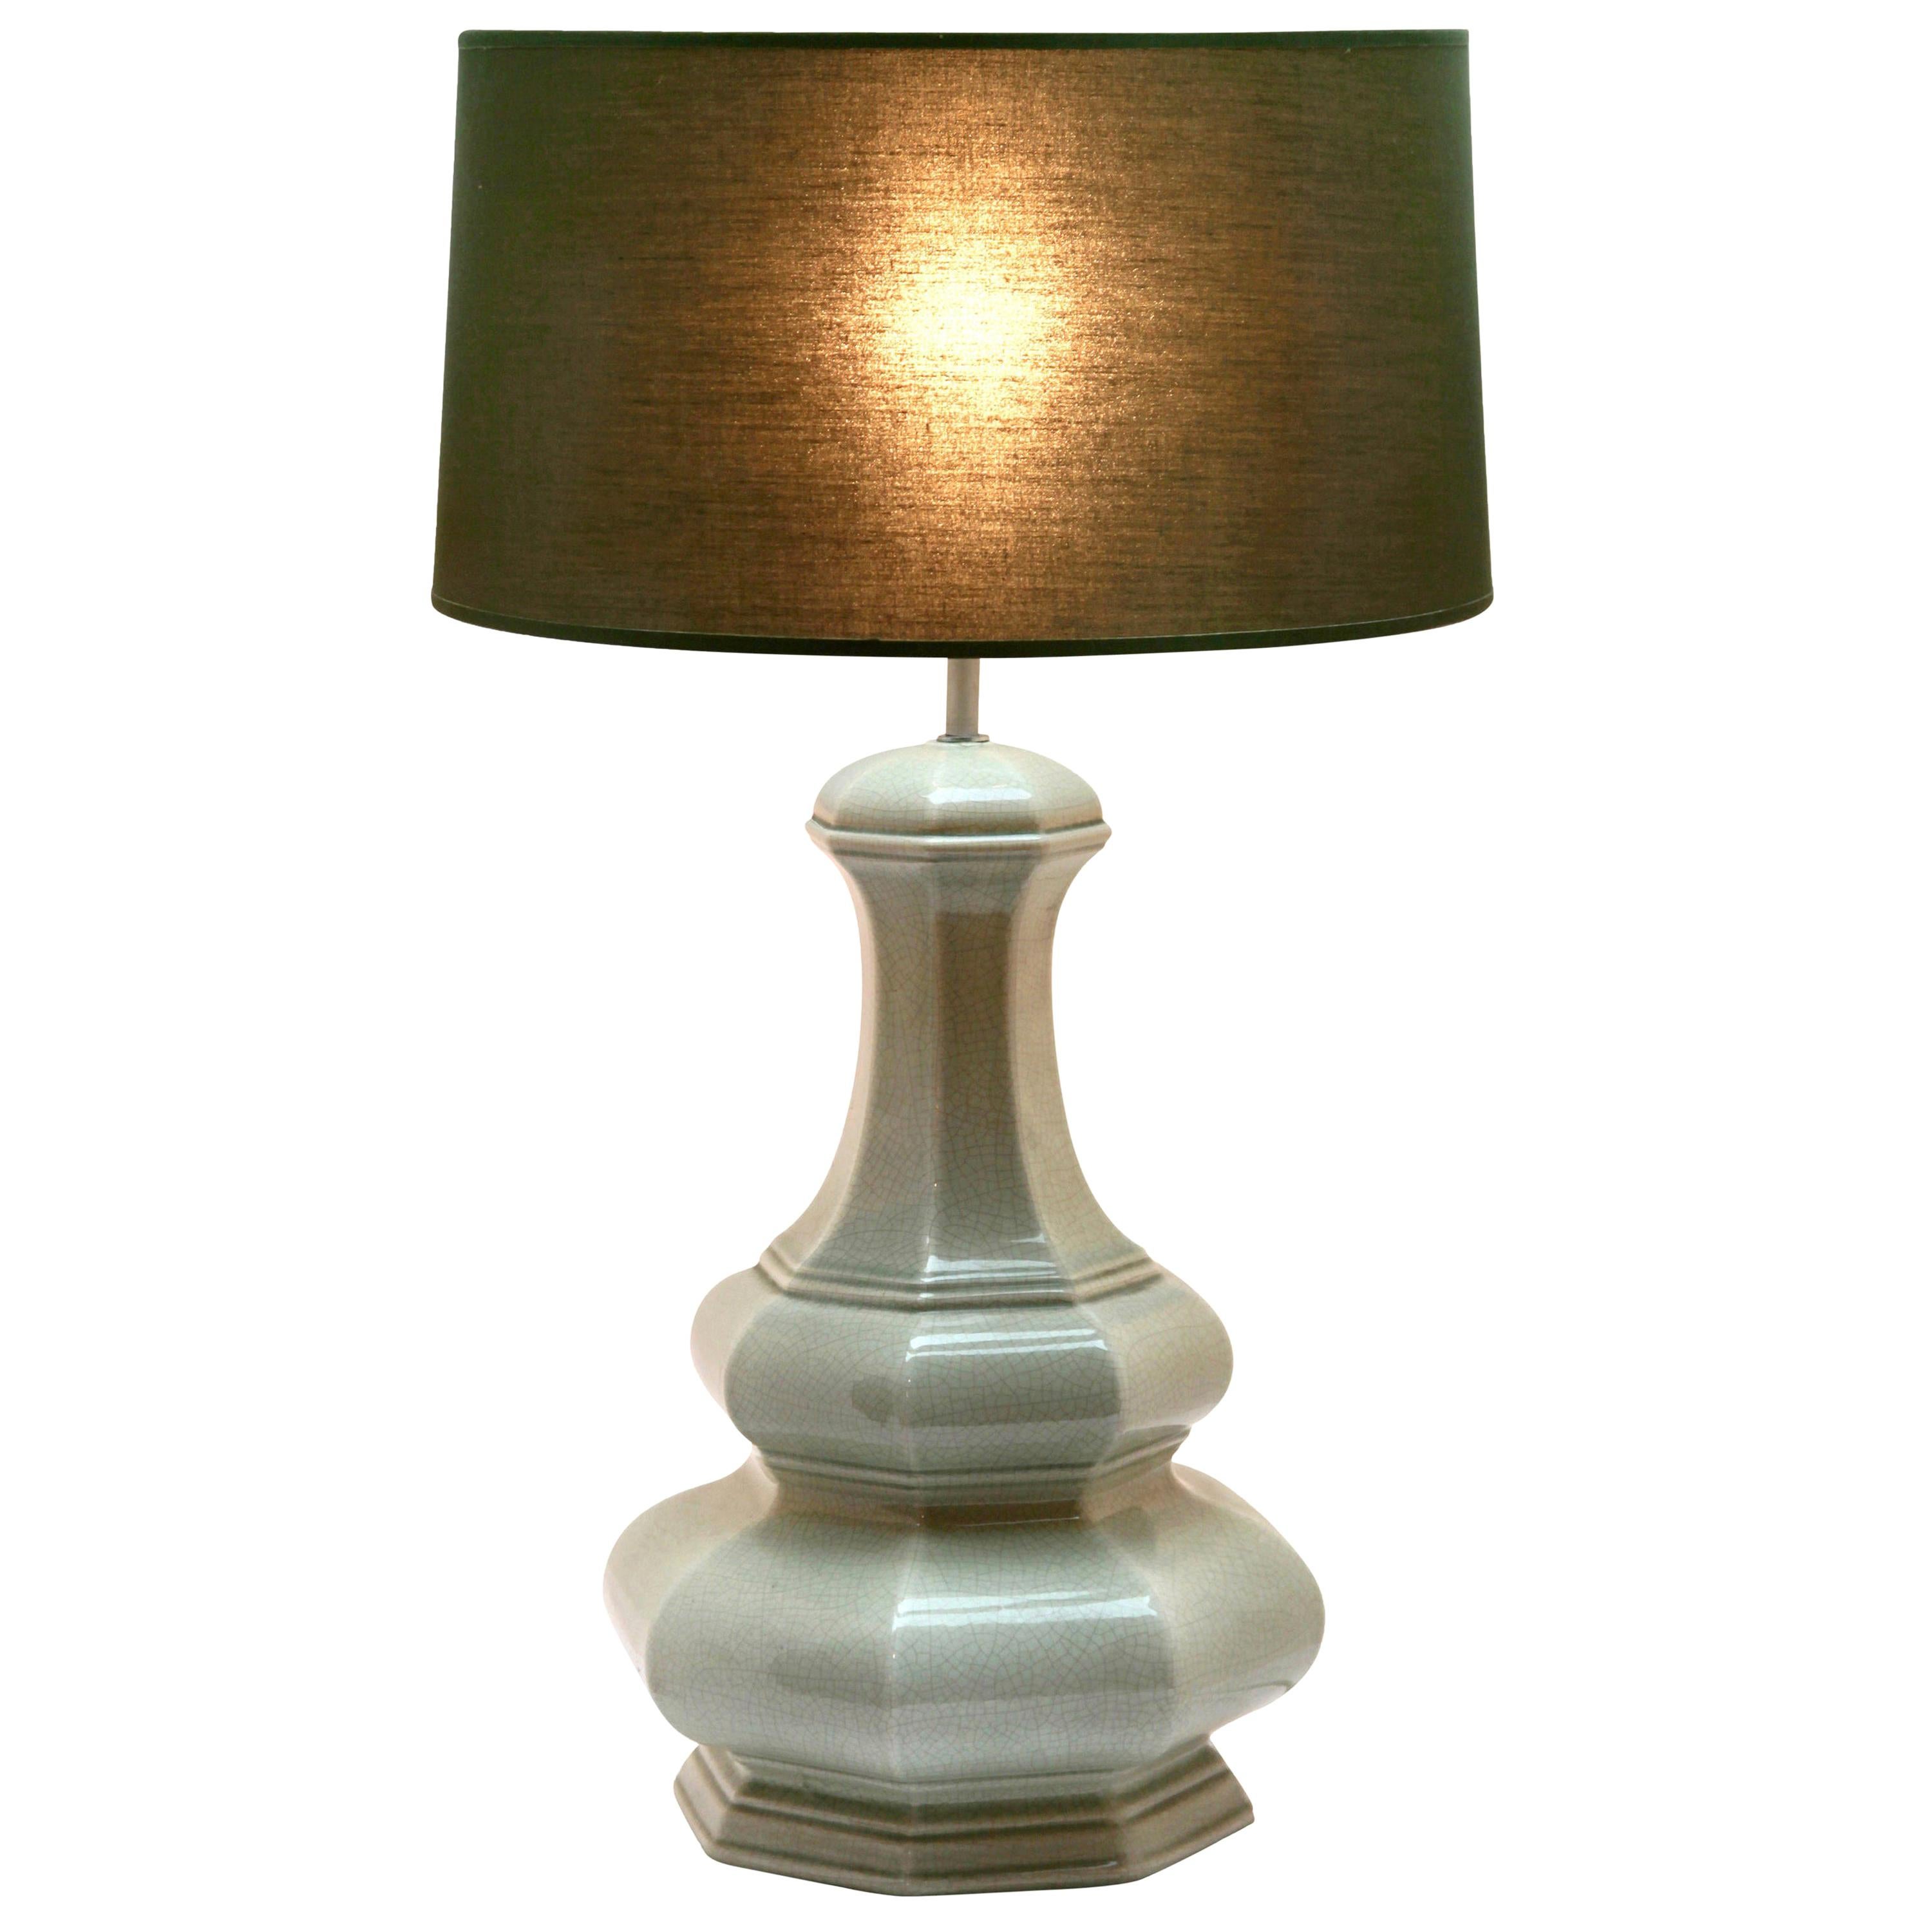 Celadon Table Lamp, Palest Jade with Fine Craquelure Glaze